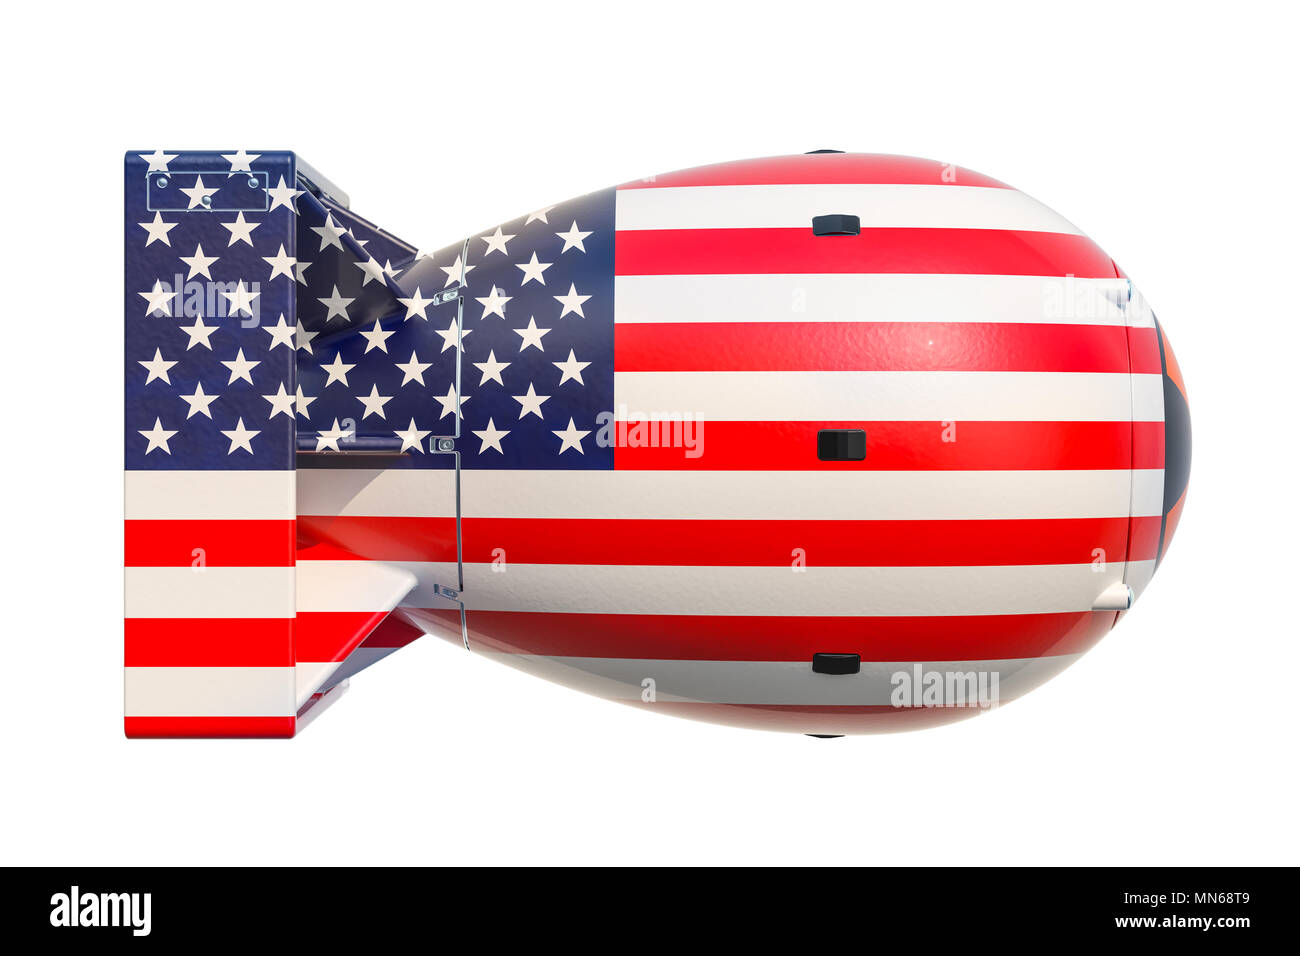 Stati Uniti d'America arma nucleare concetto, rendering 3D Foto Stock